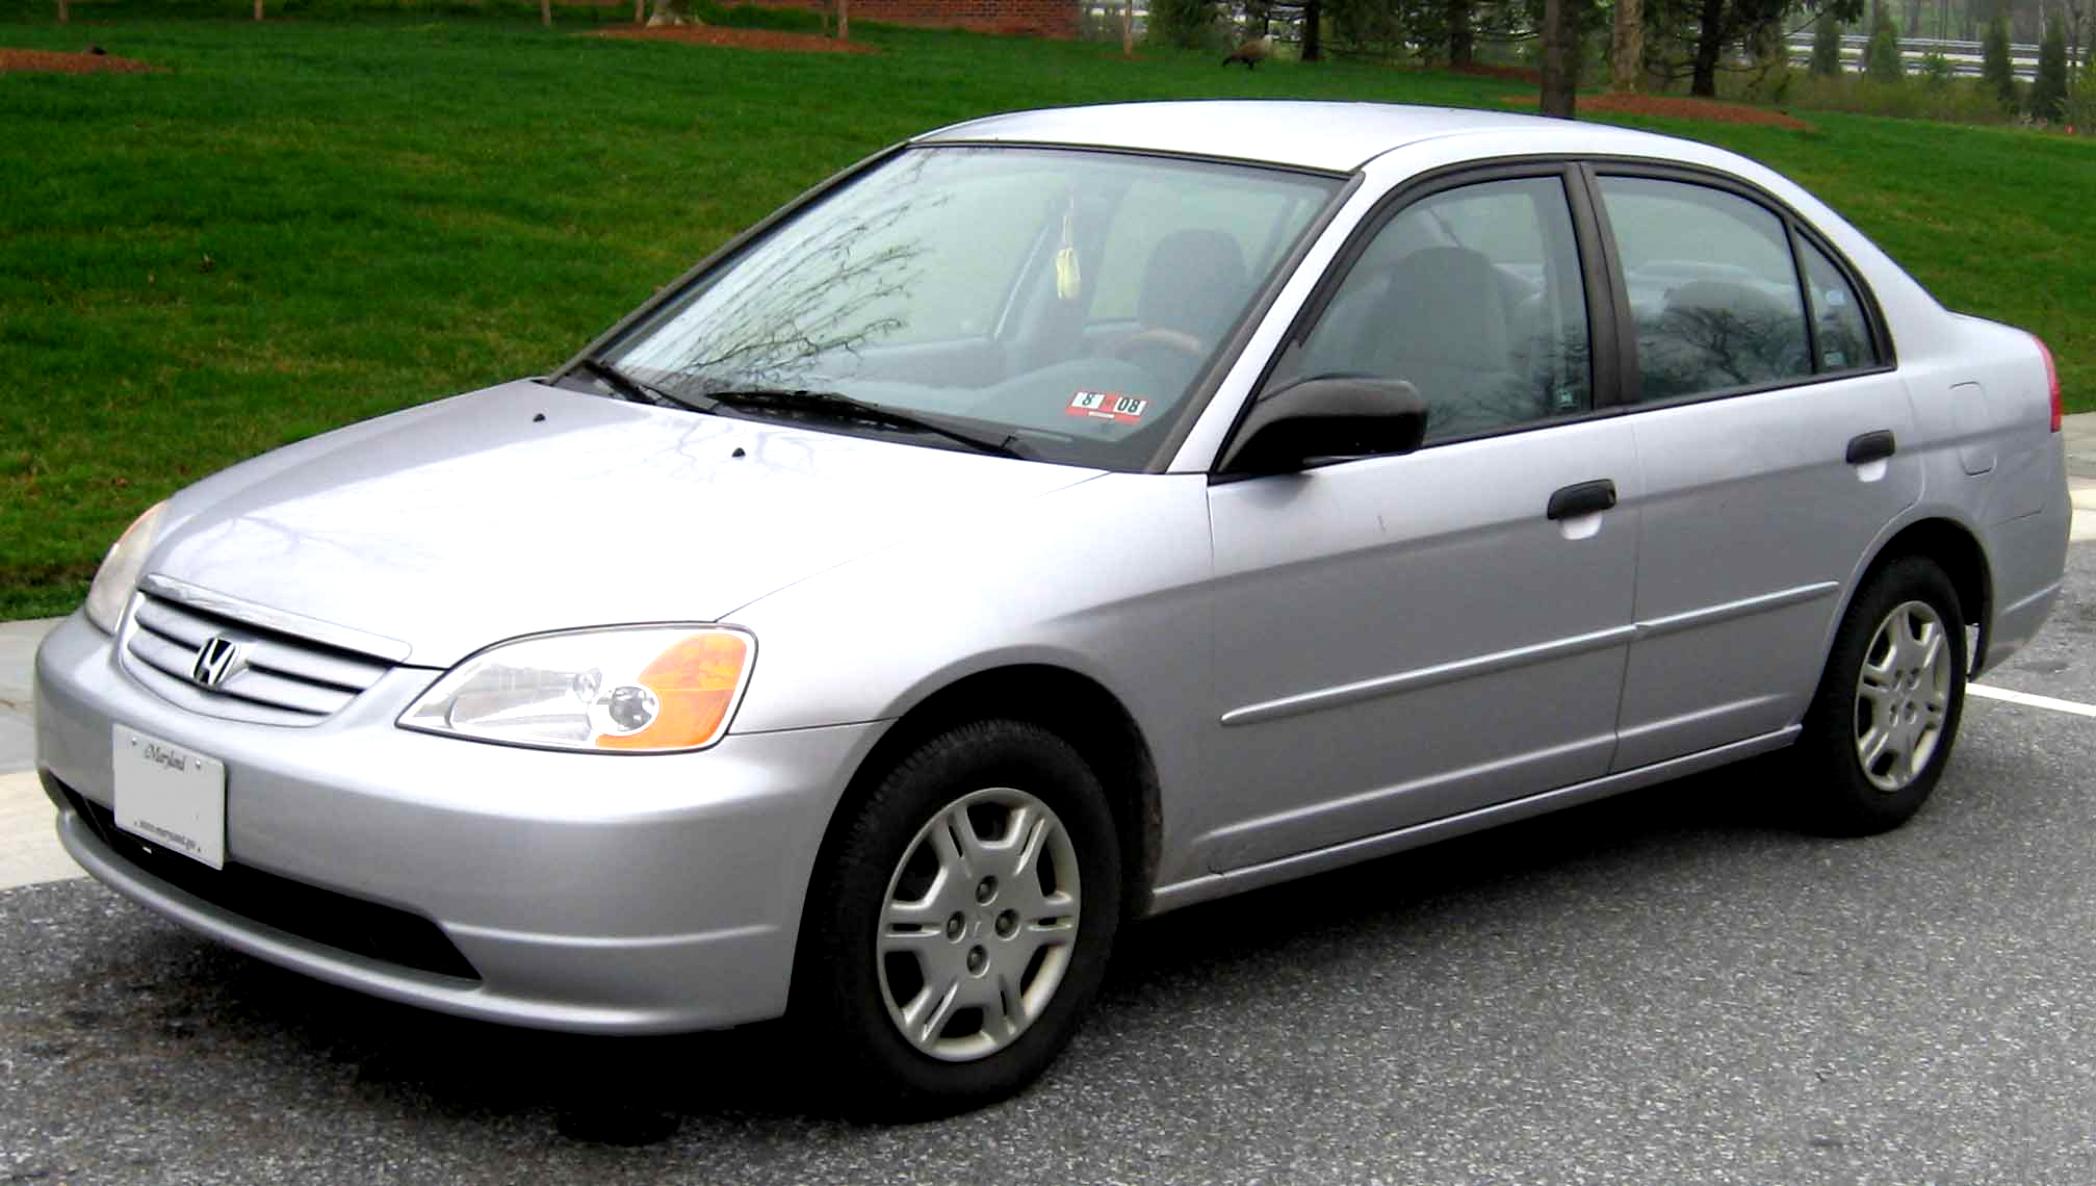 Honda Civic Sedan 2003 #1